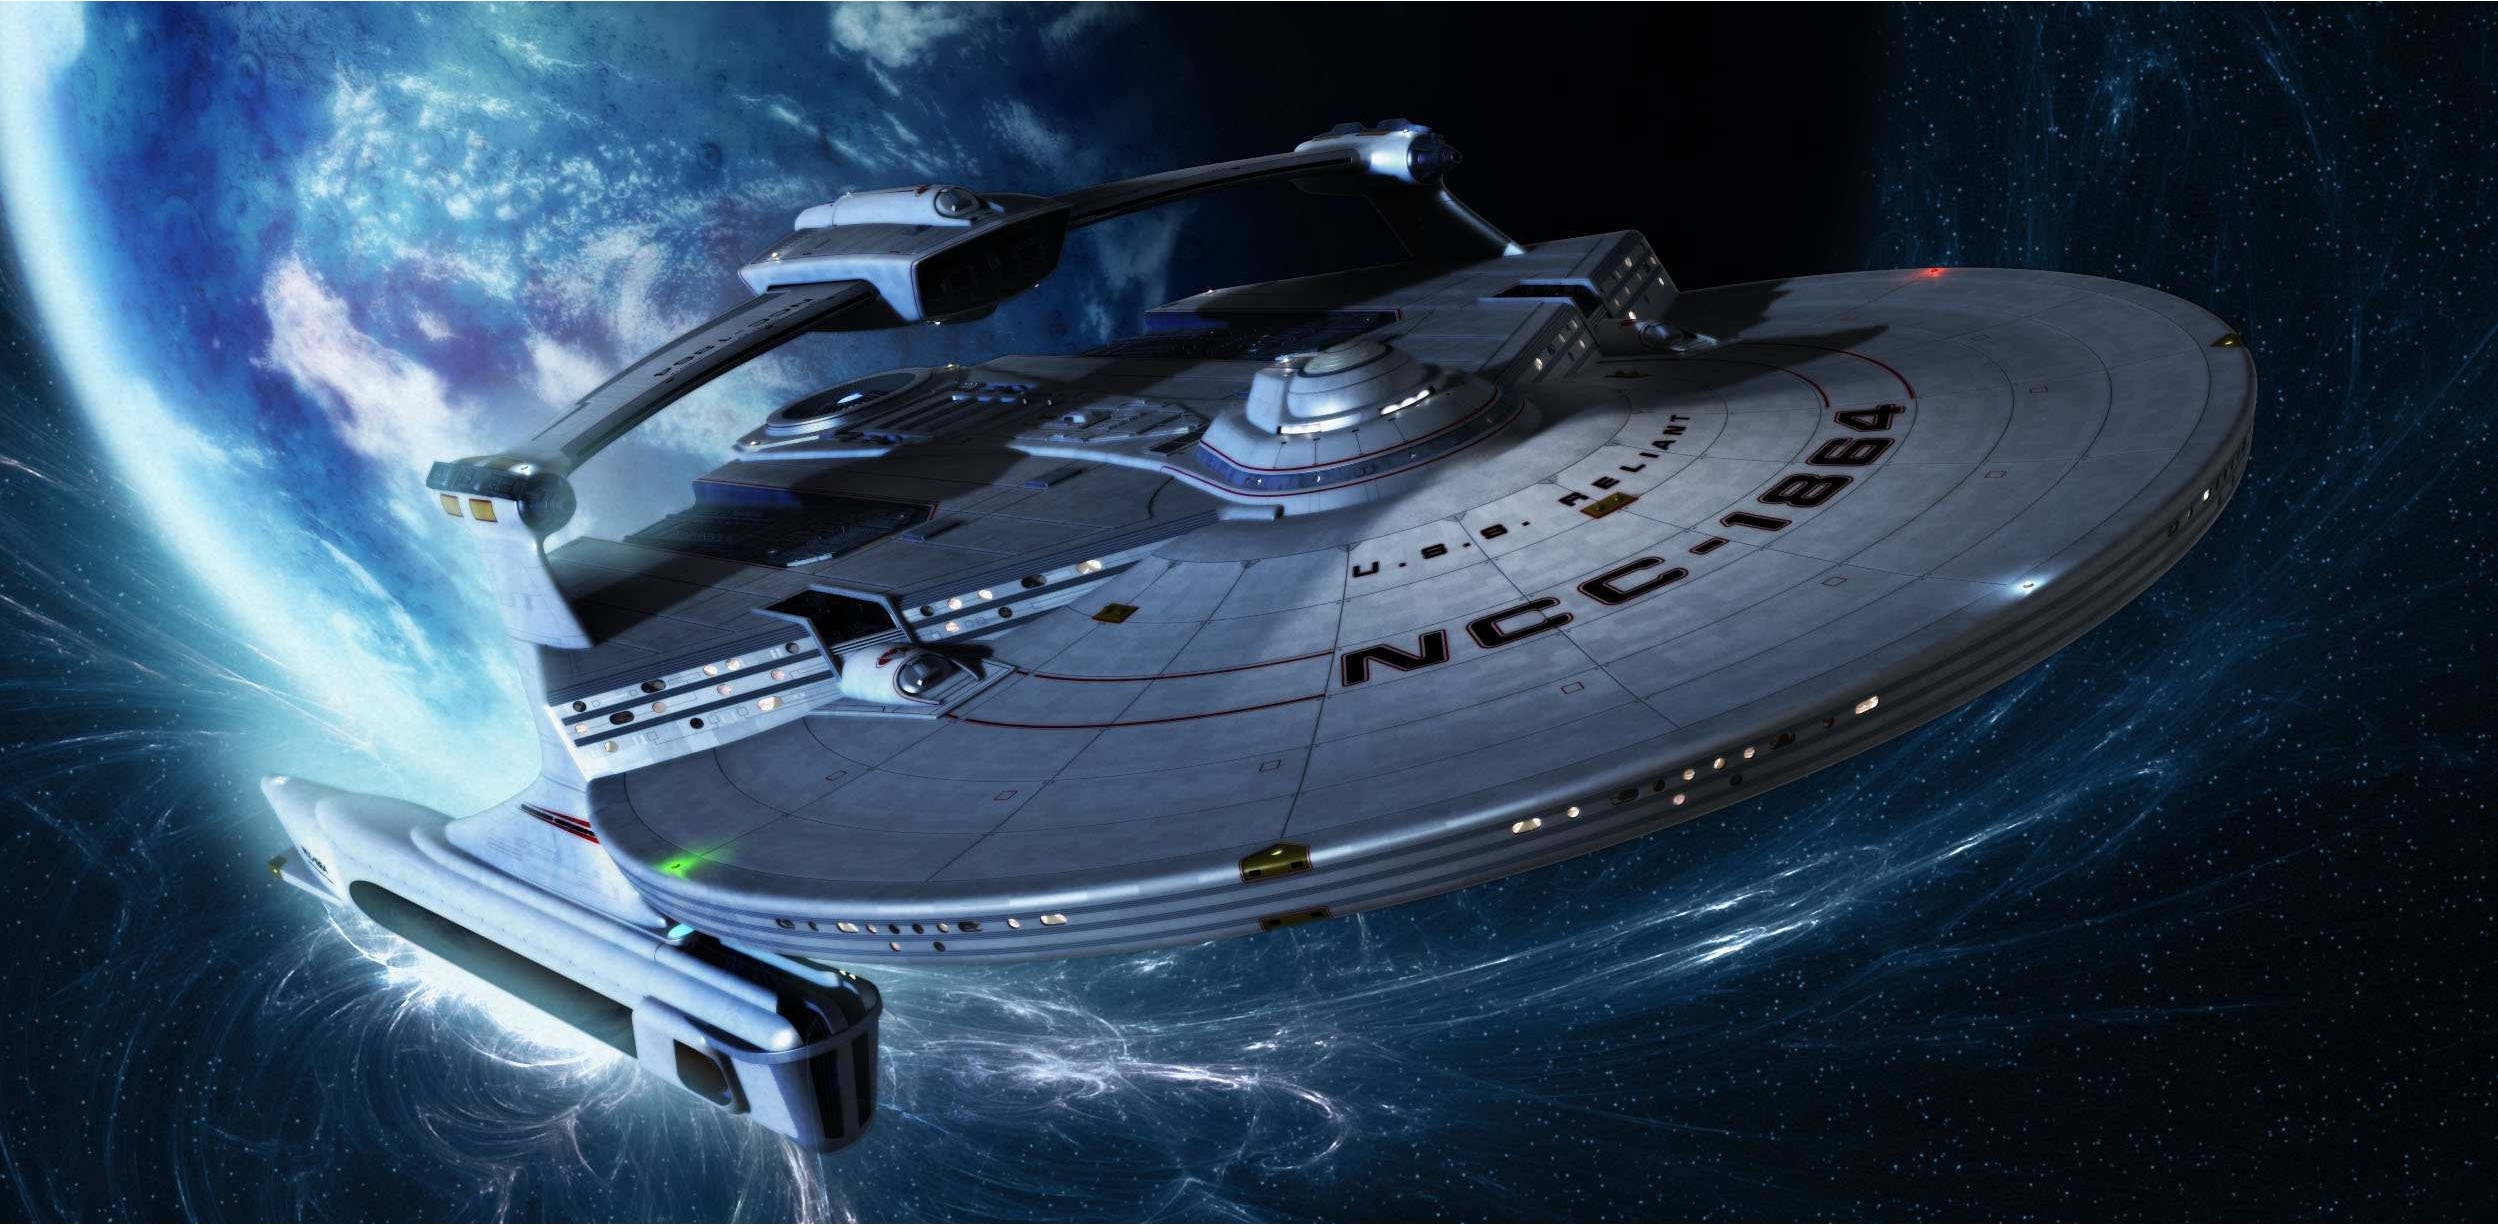 10 Best Star Trek Ship Wallpaper FULL HD 1080p For PC Background